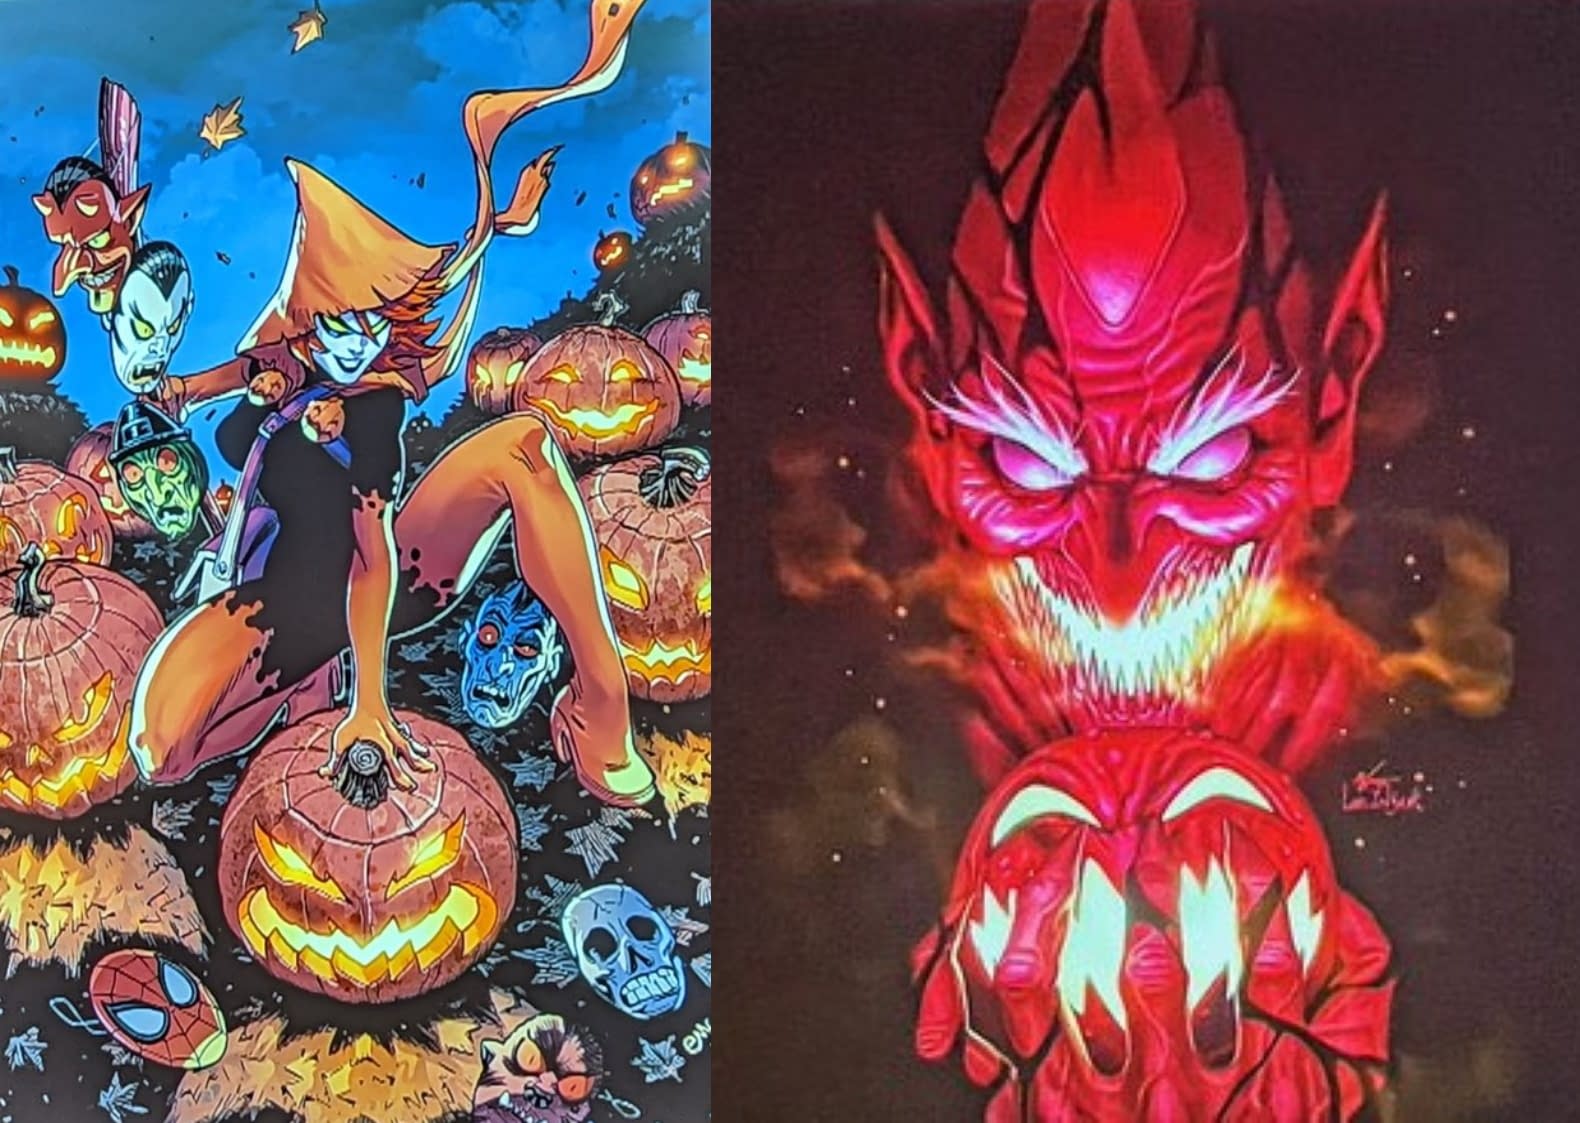 Alex Paknadel & Jan Bazaldua's Red Goblin Marvel in February 2023